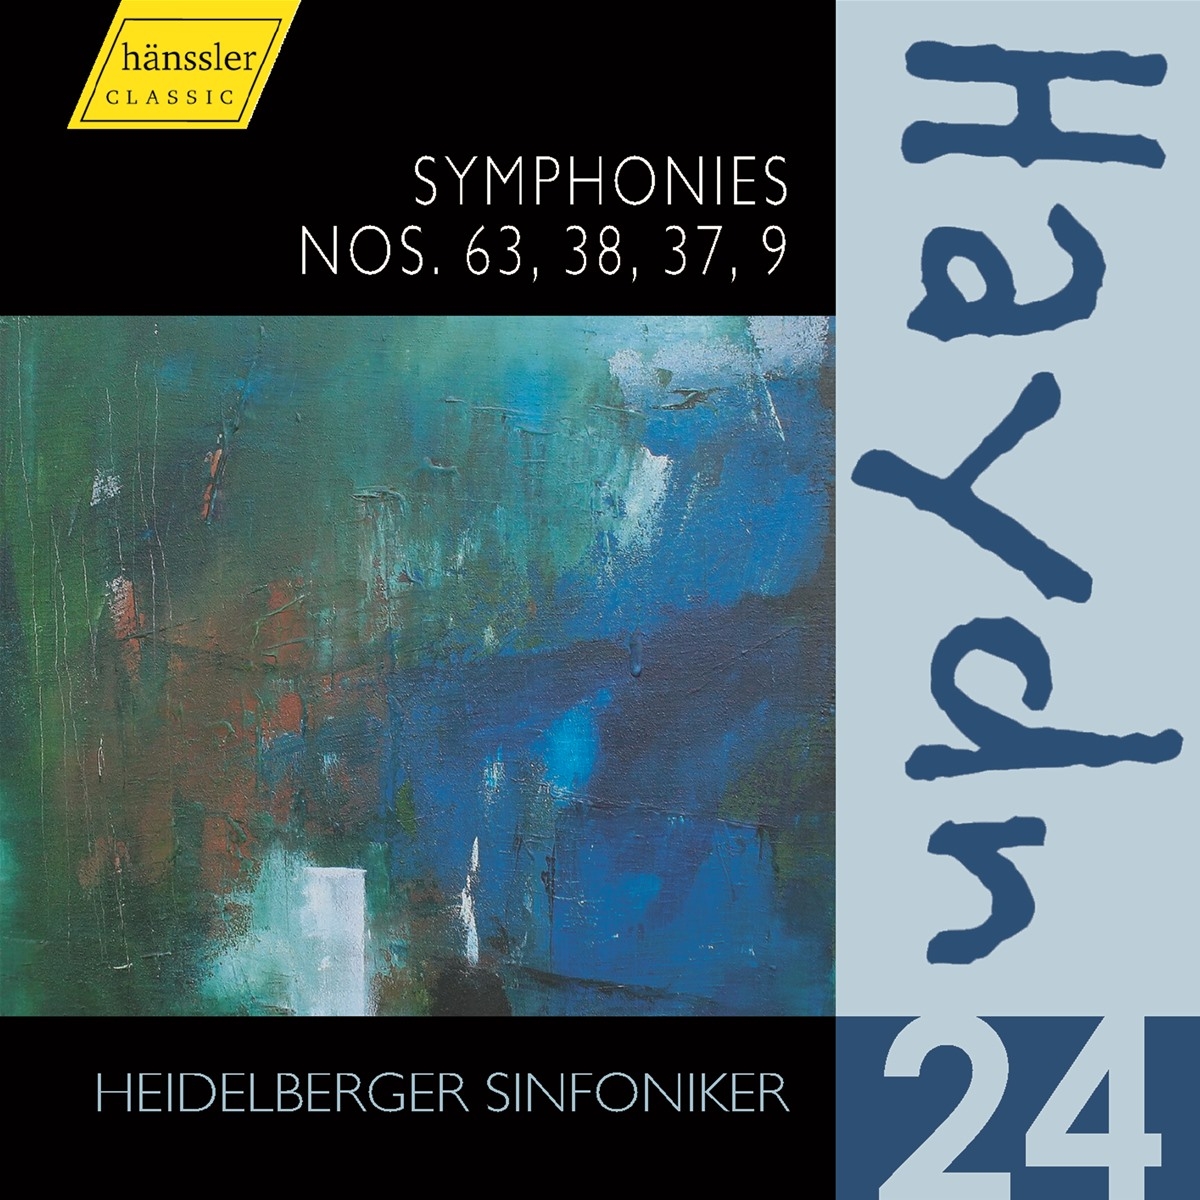 Symphonies Nos. 63